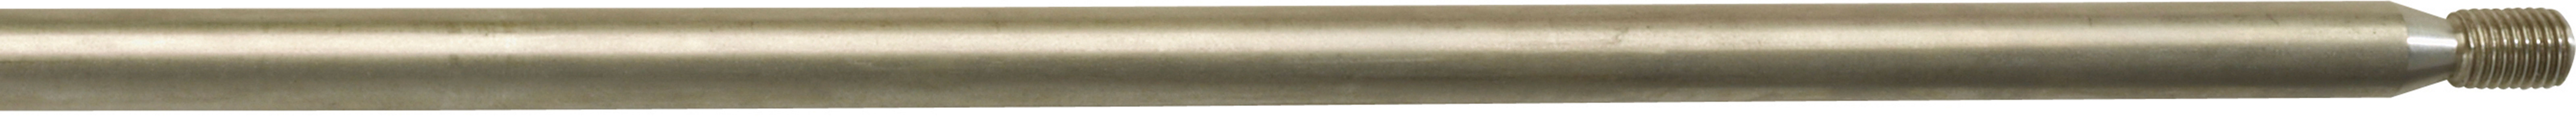 Šíp nerezový so závitom pre pneumatické harpúny Ø 8.0 mm